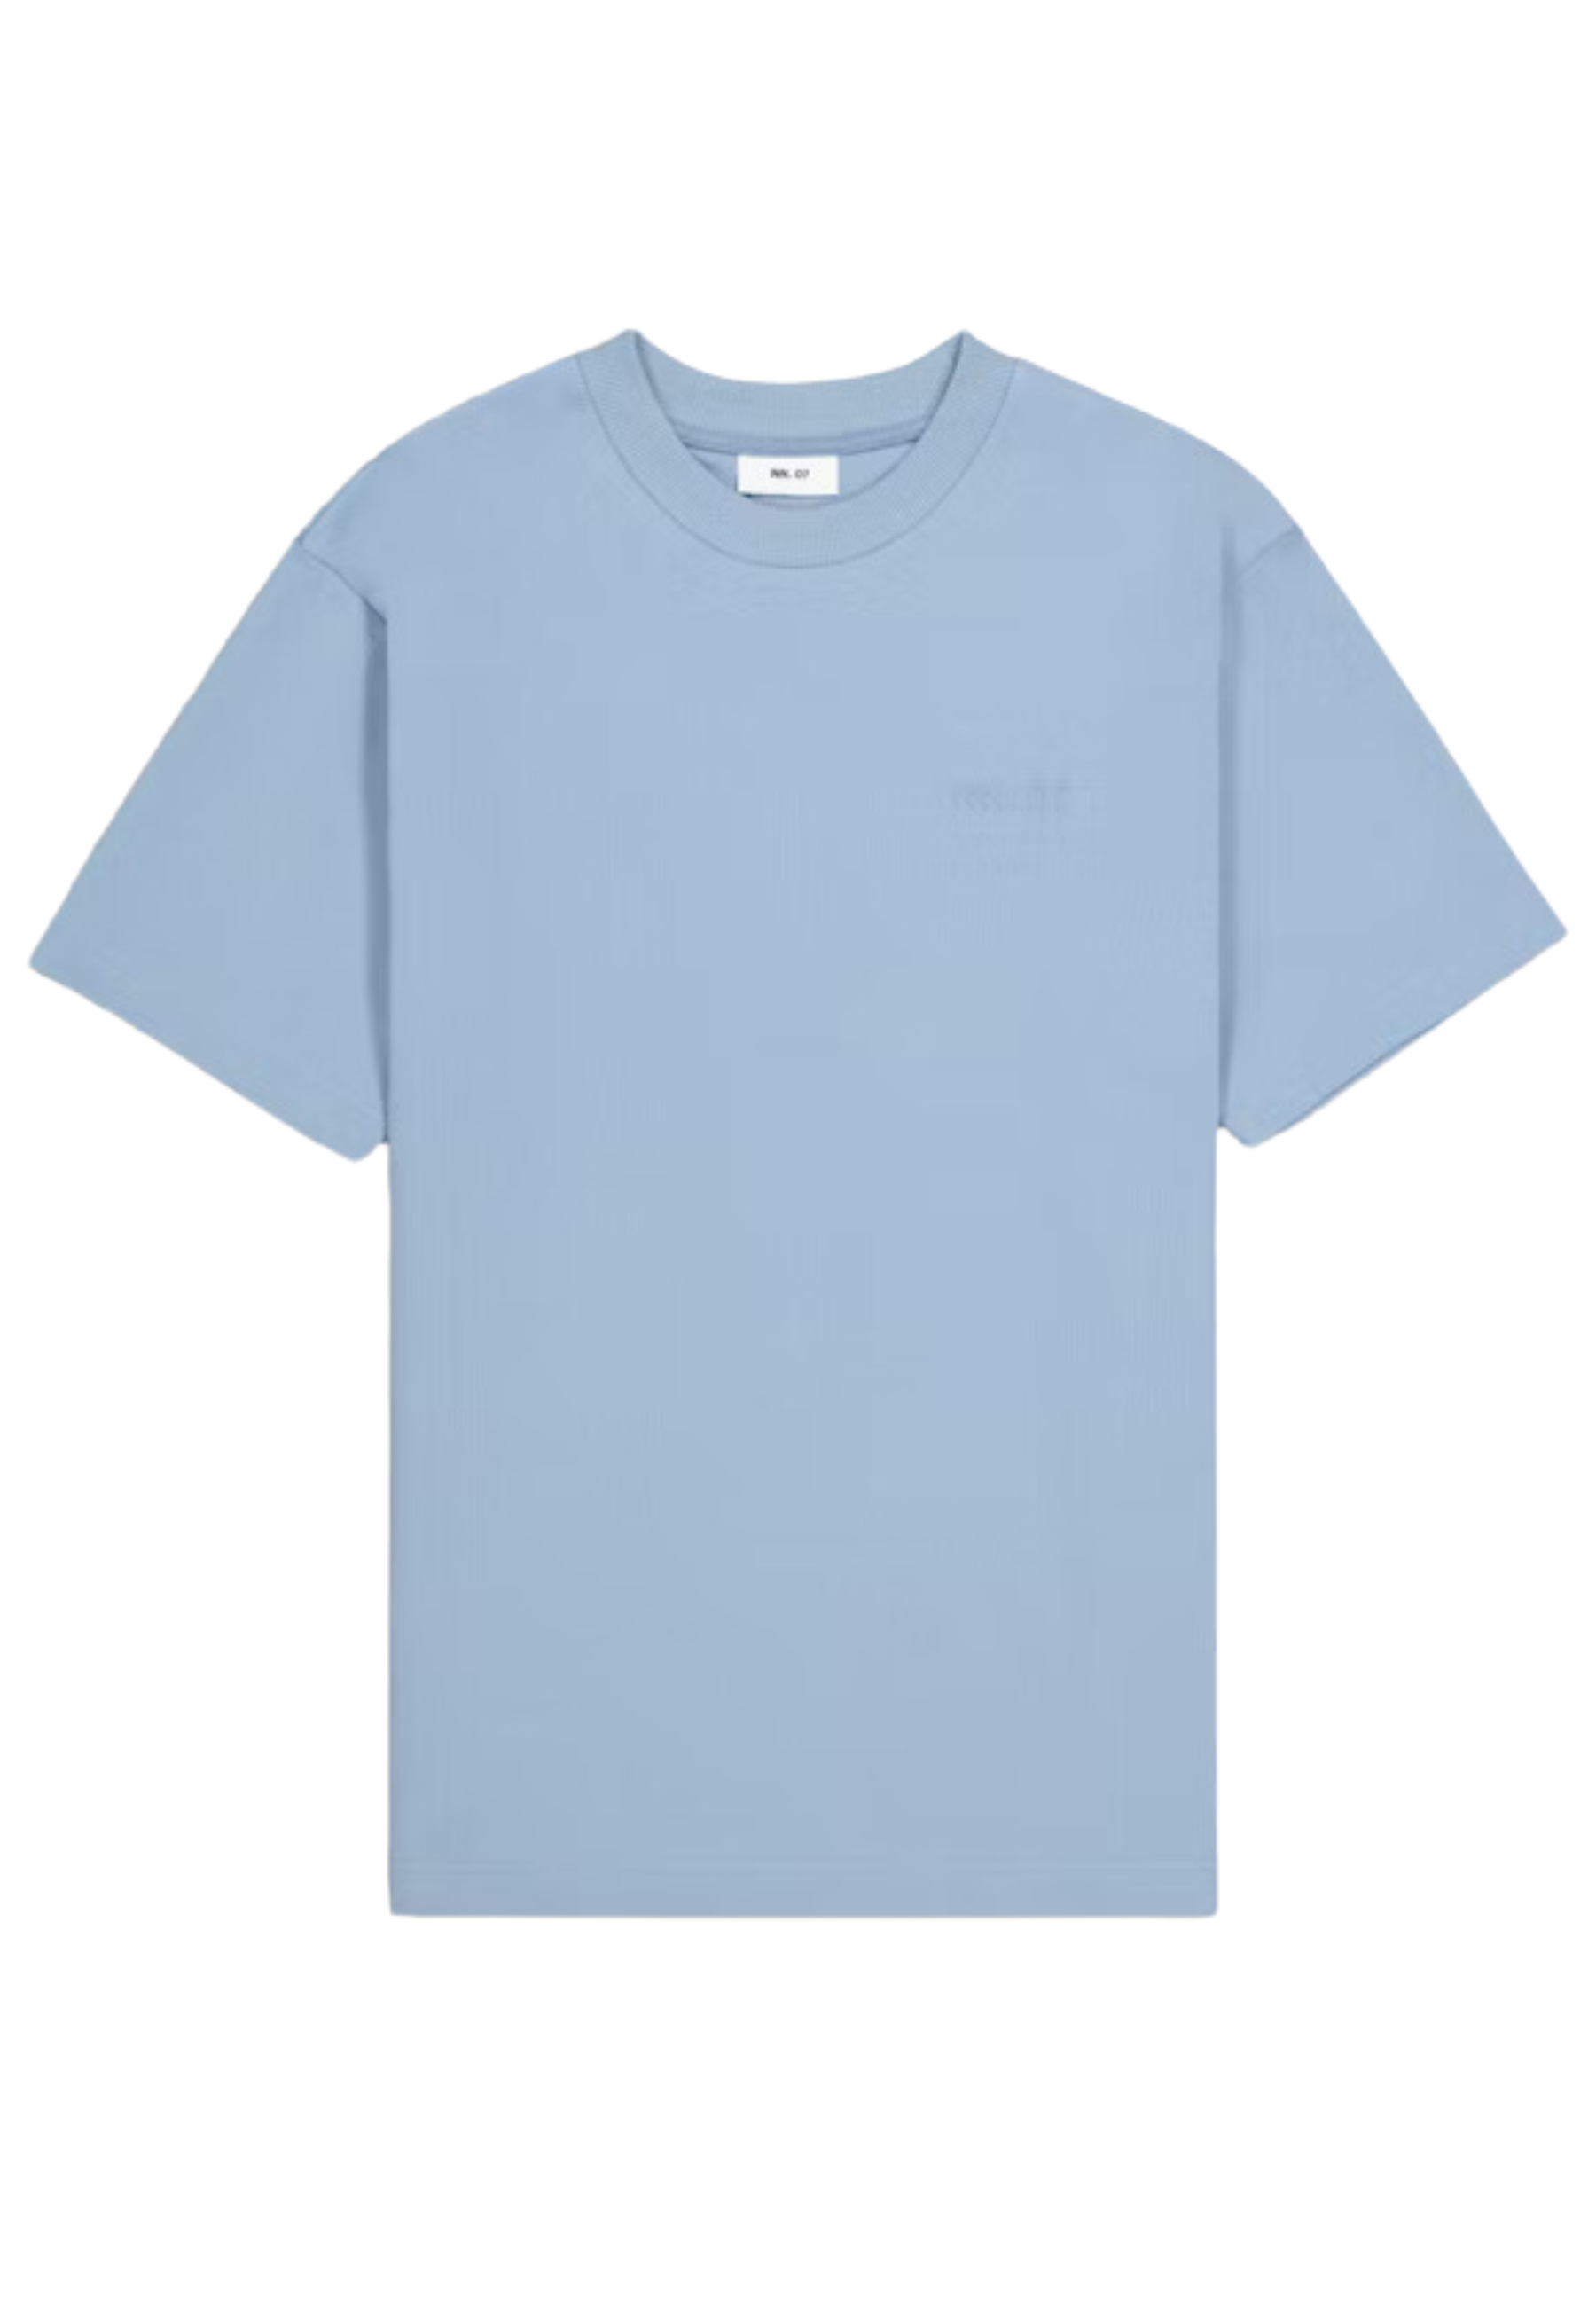 Shirt Blauw Nat t-shirts blauw